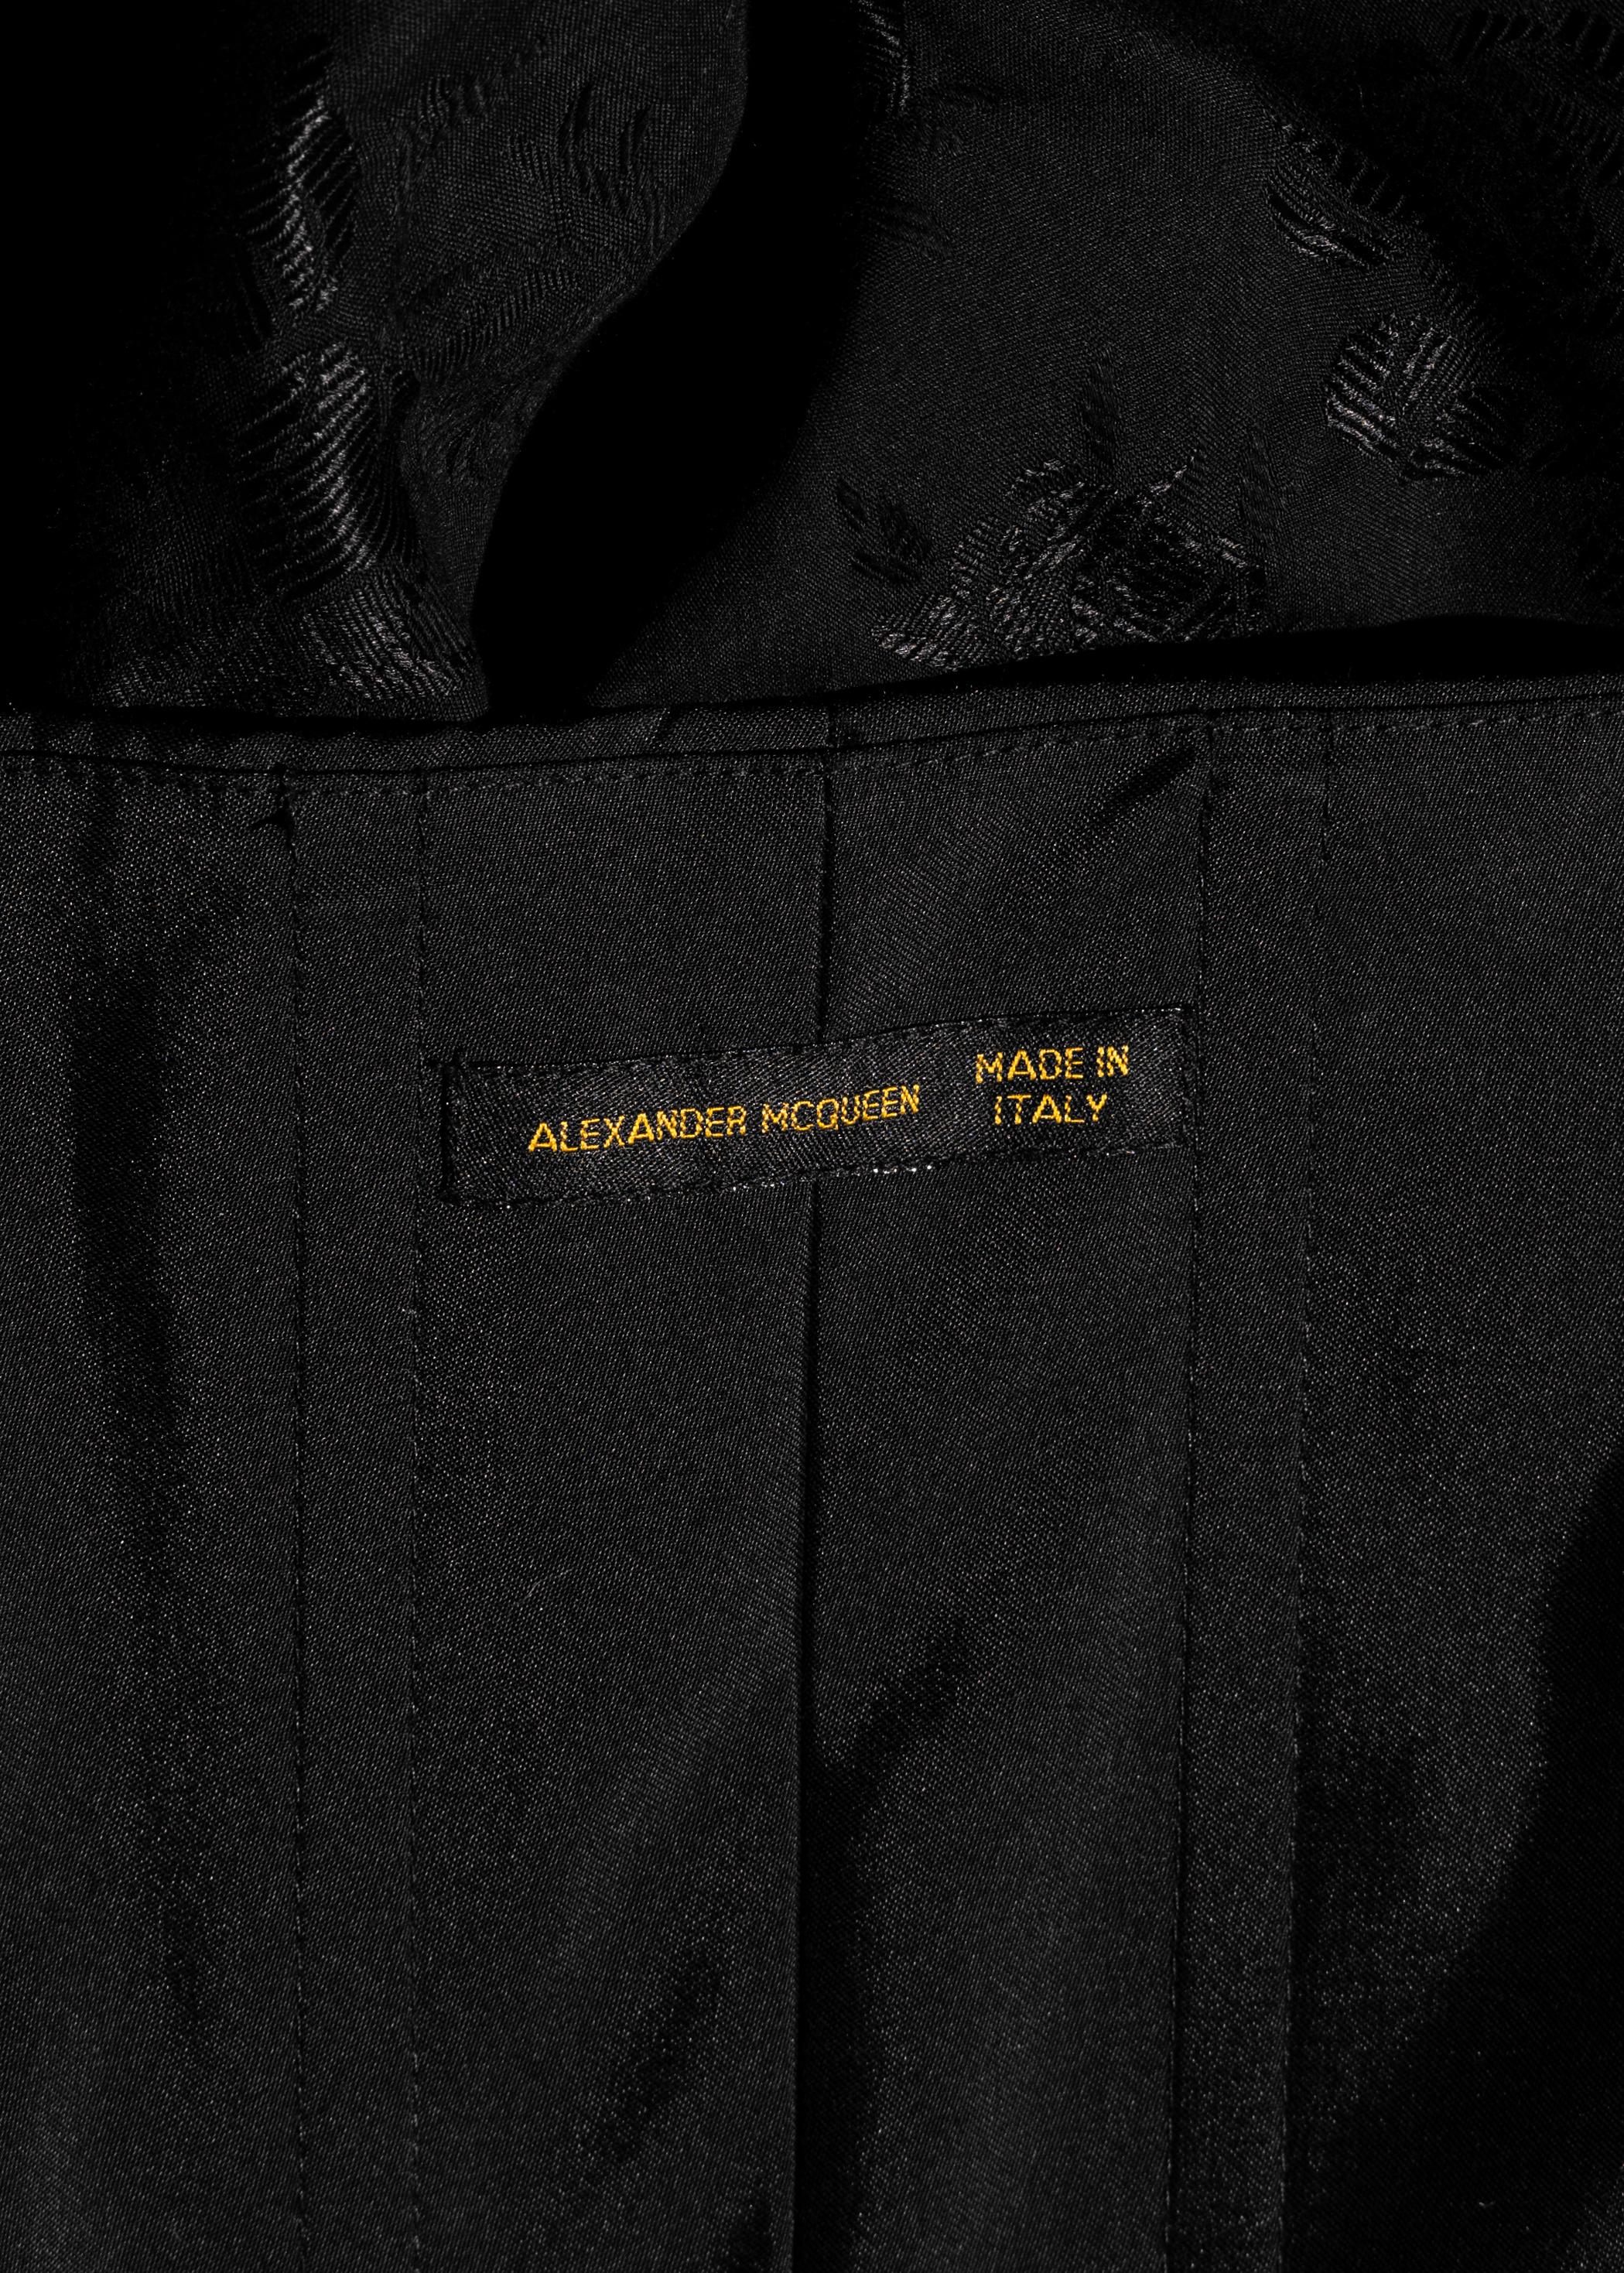 Alexander McQueen black off-shoulder bustled evening dress, ss 2002 For Sale 5